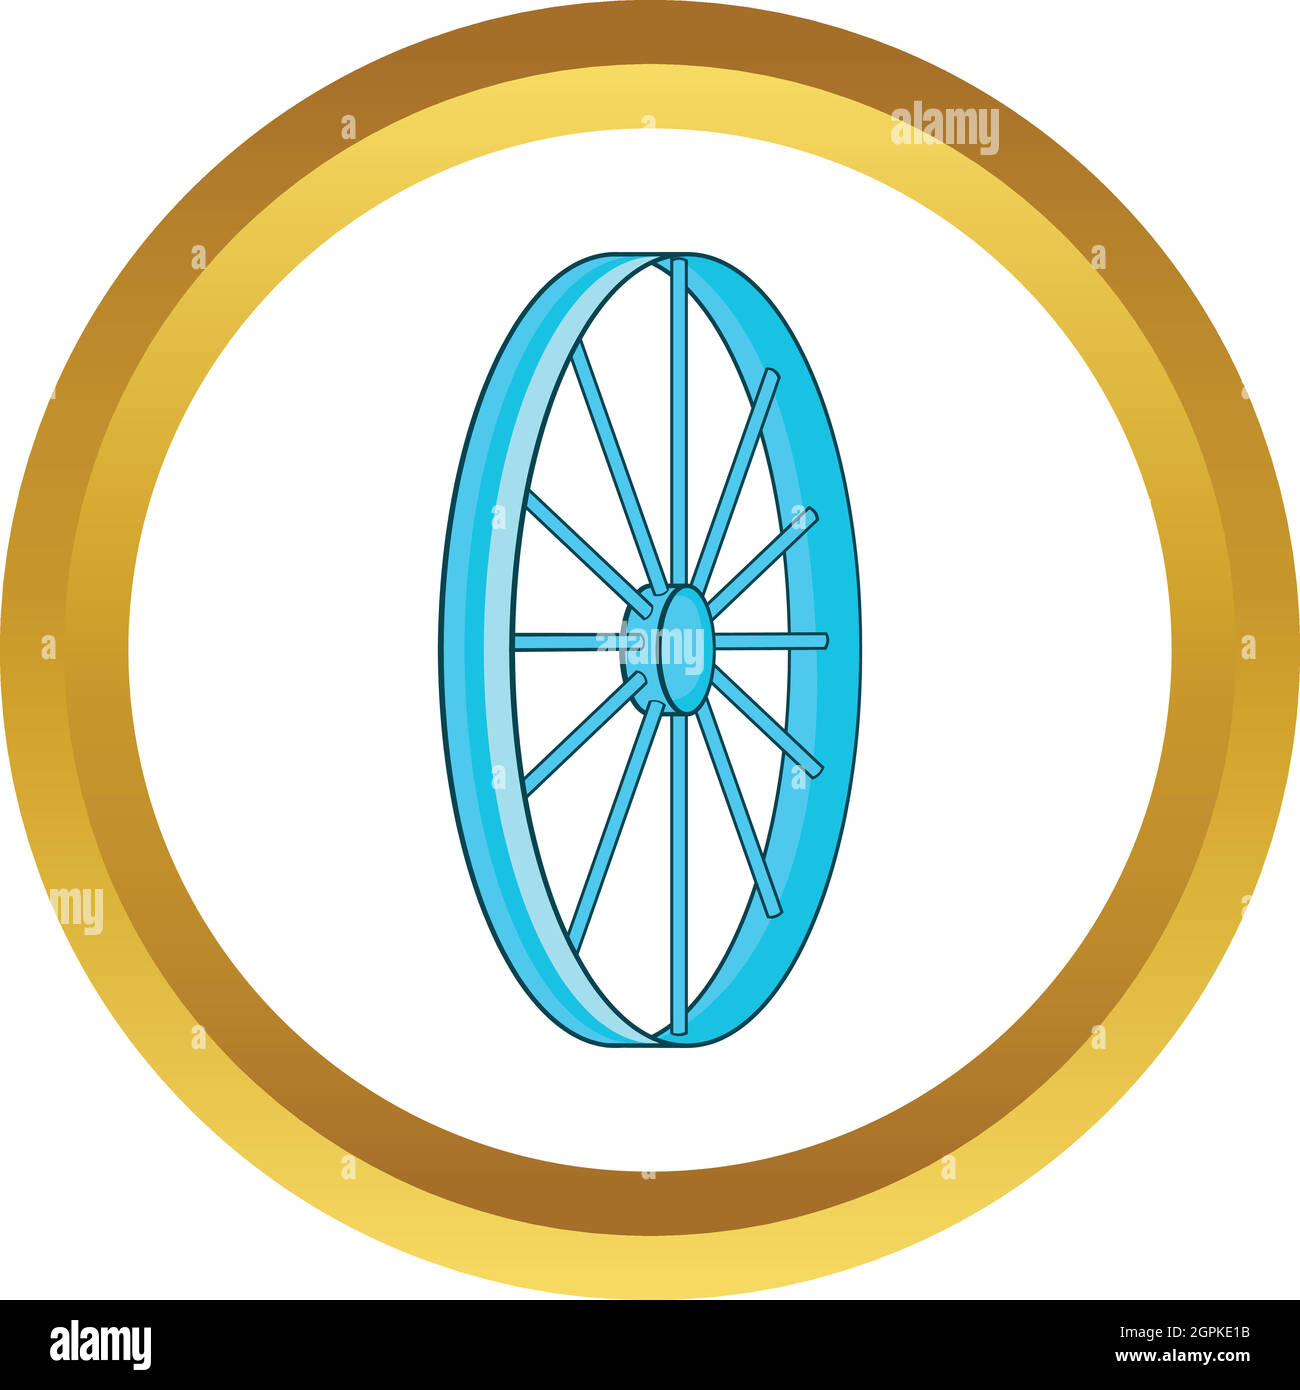 Bicycle wheel symbol vector icon Stock Vector